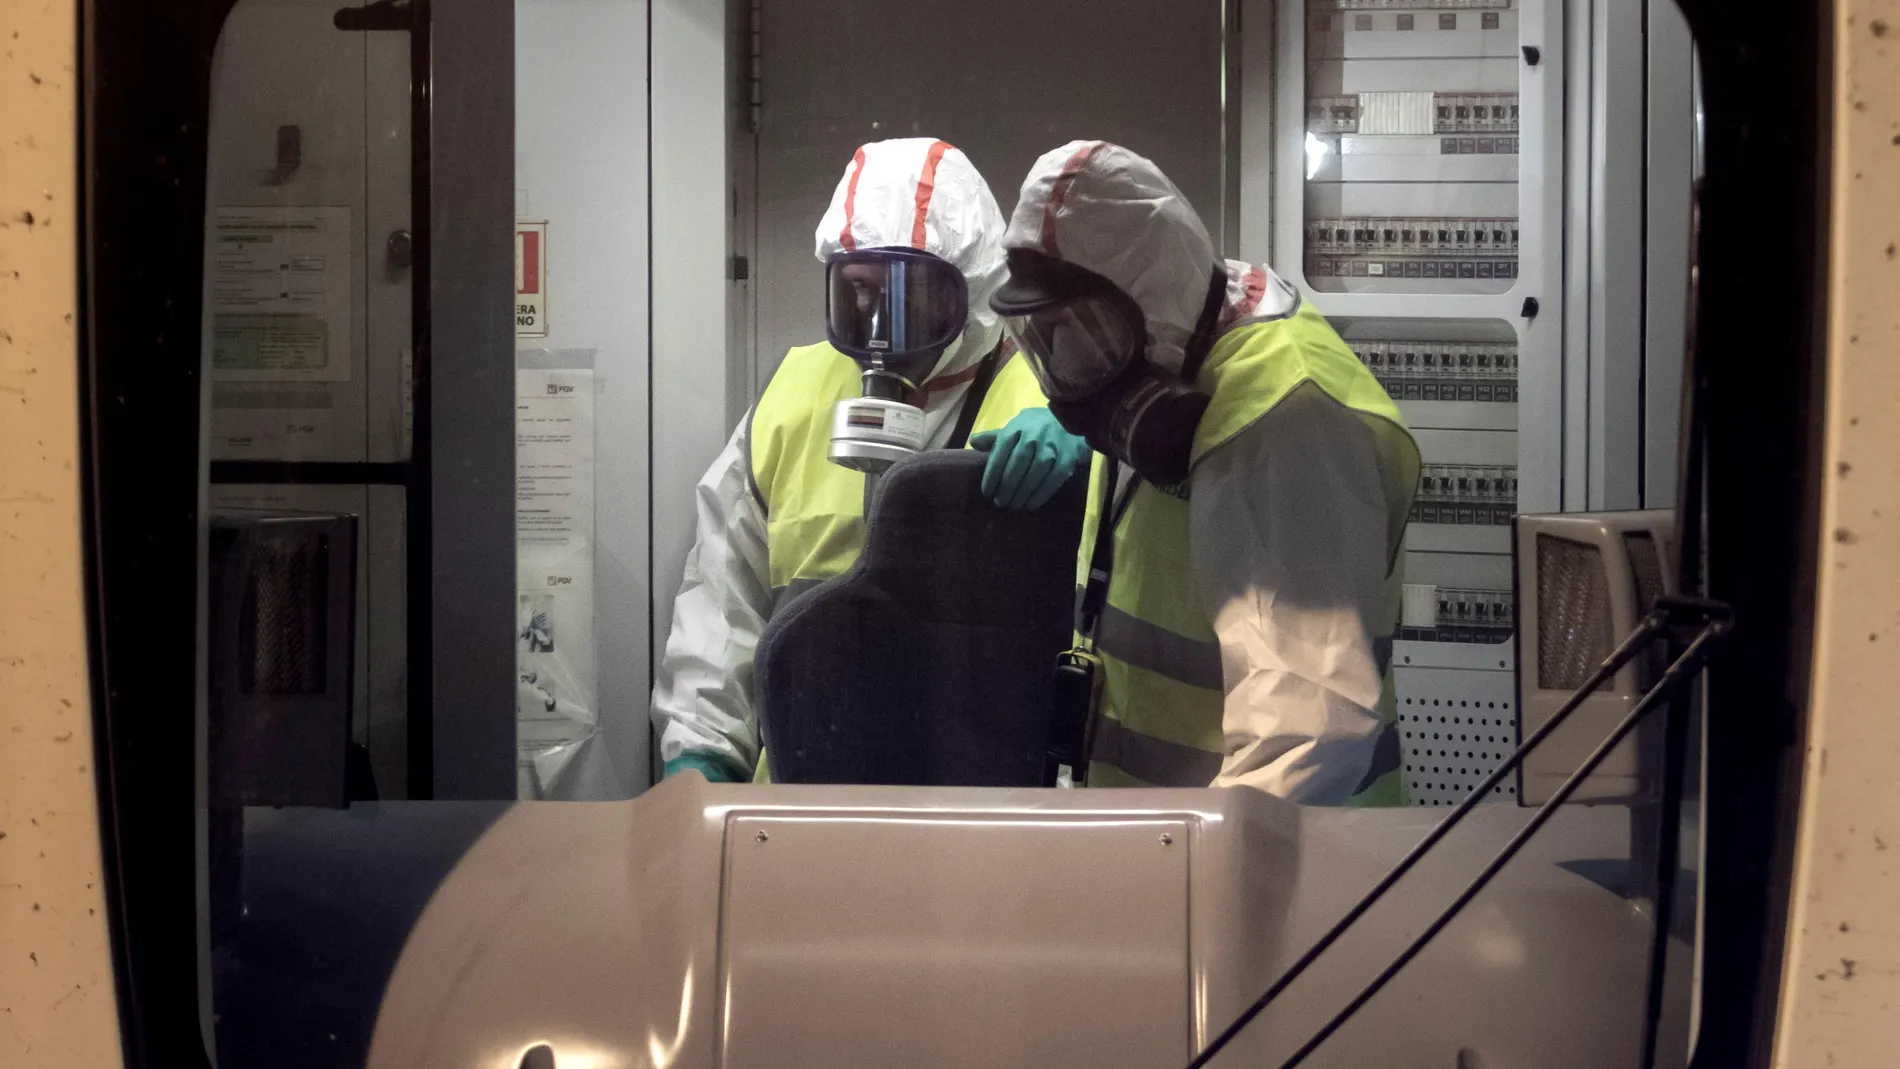 Dos operarios de Ferrocarriles de la Generalitat Valenciana (FGV), realiza labores de desinfección en un vagón de Metrovalencia mediante nebulización con peróxido de hidrógeno, con la finalidad de hacer frente a los efectos de la pandemia de la covid-19